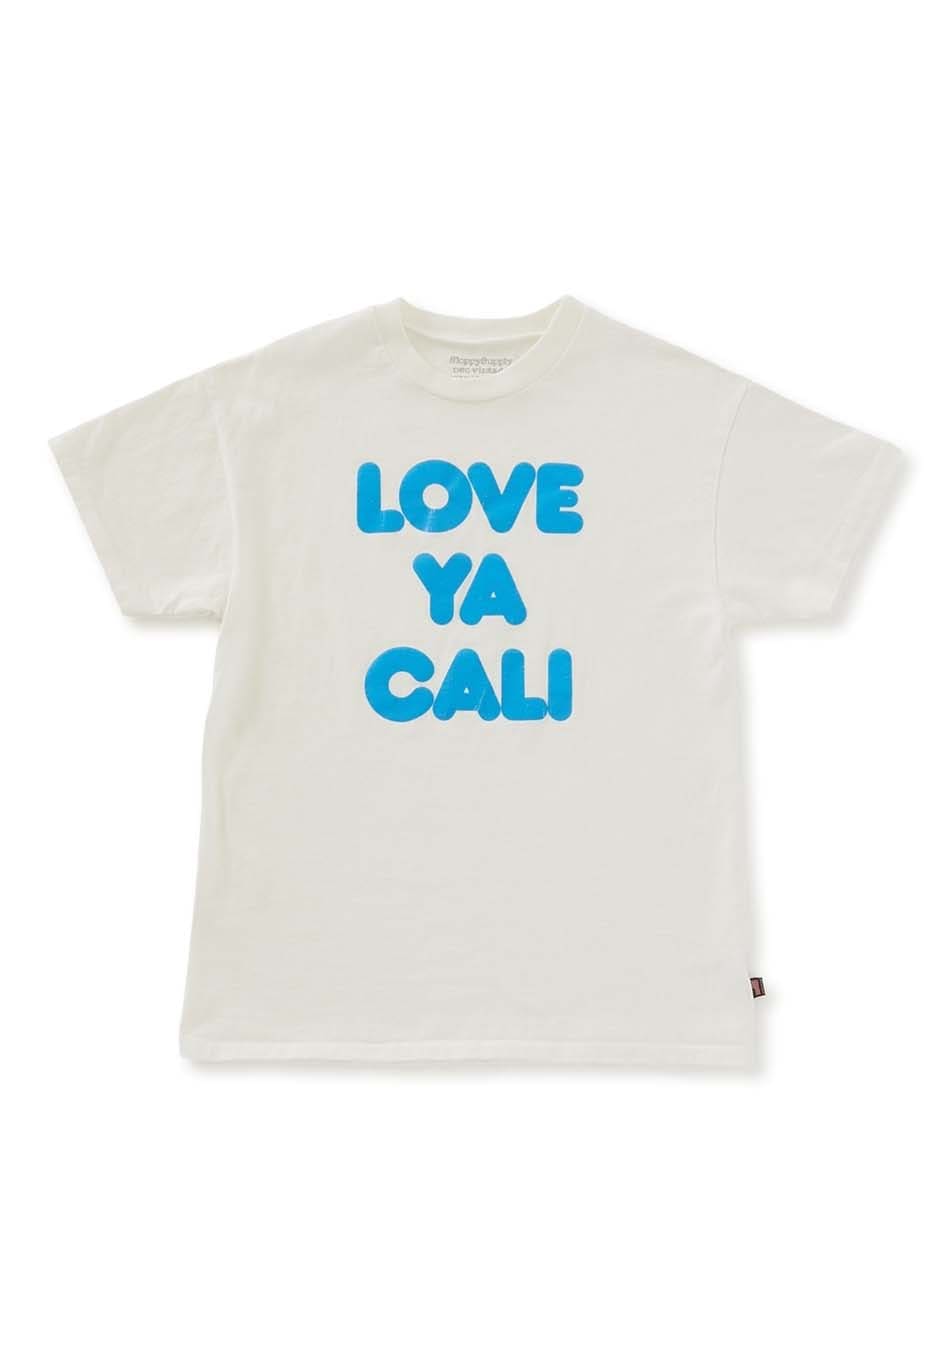 SLOPPY SUPPLY /NEO VINTAGE LOVE YA CALI Tシャツ